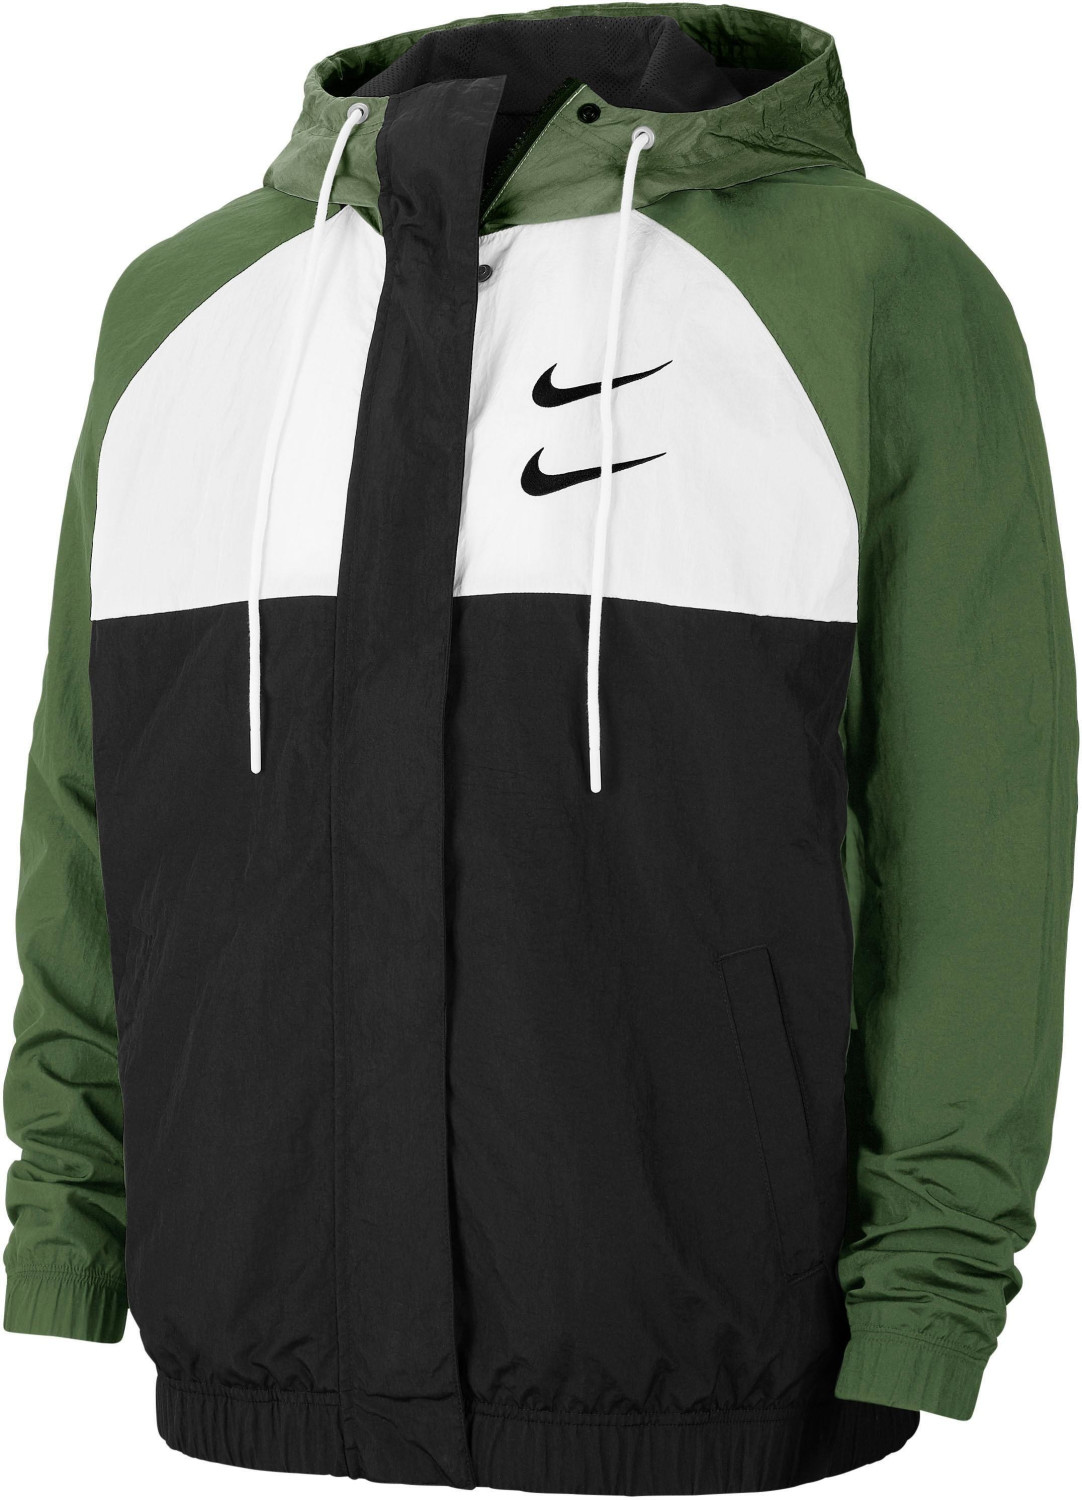 Nike Men's Woven Hooded Jacket Sportswear Swoosh (CJ4888-010) black/white/treeline/black